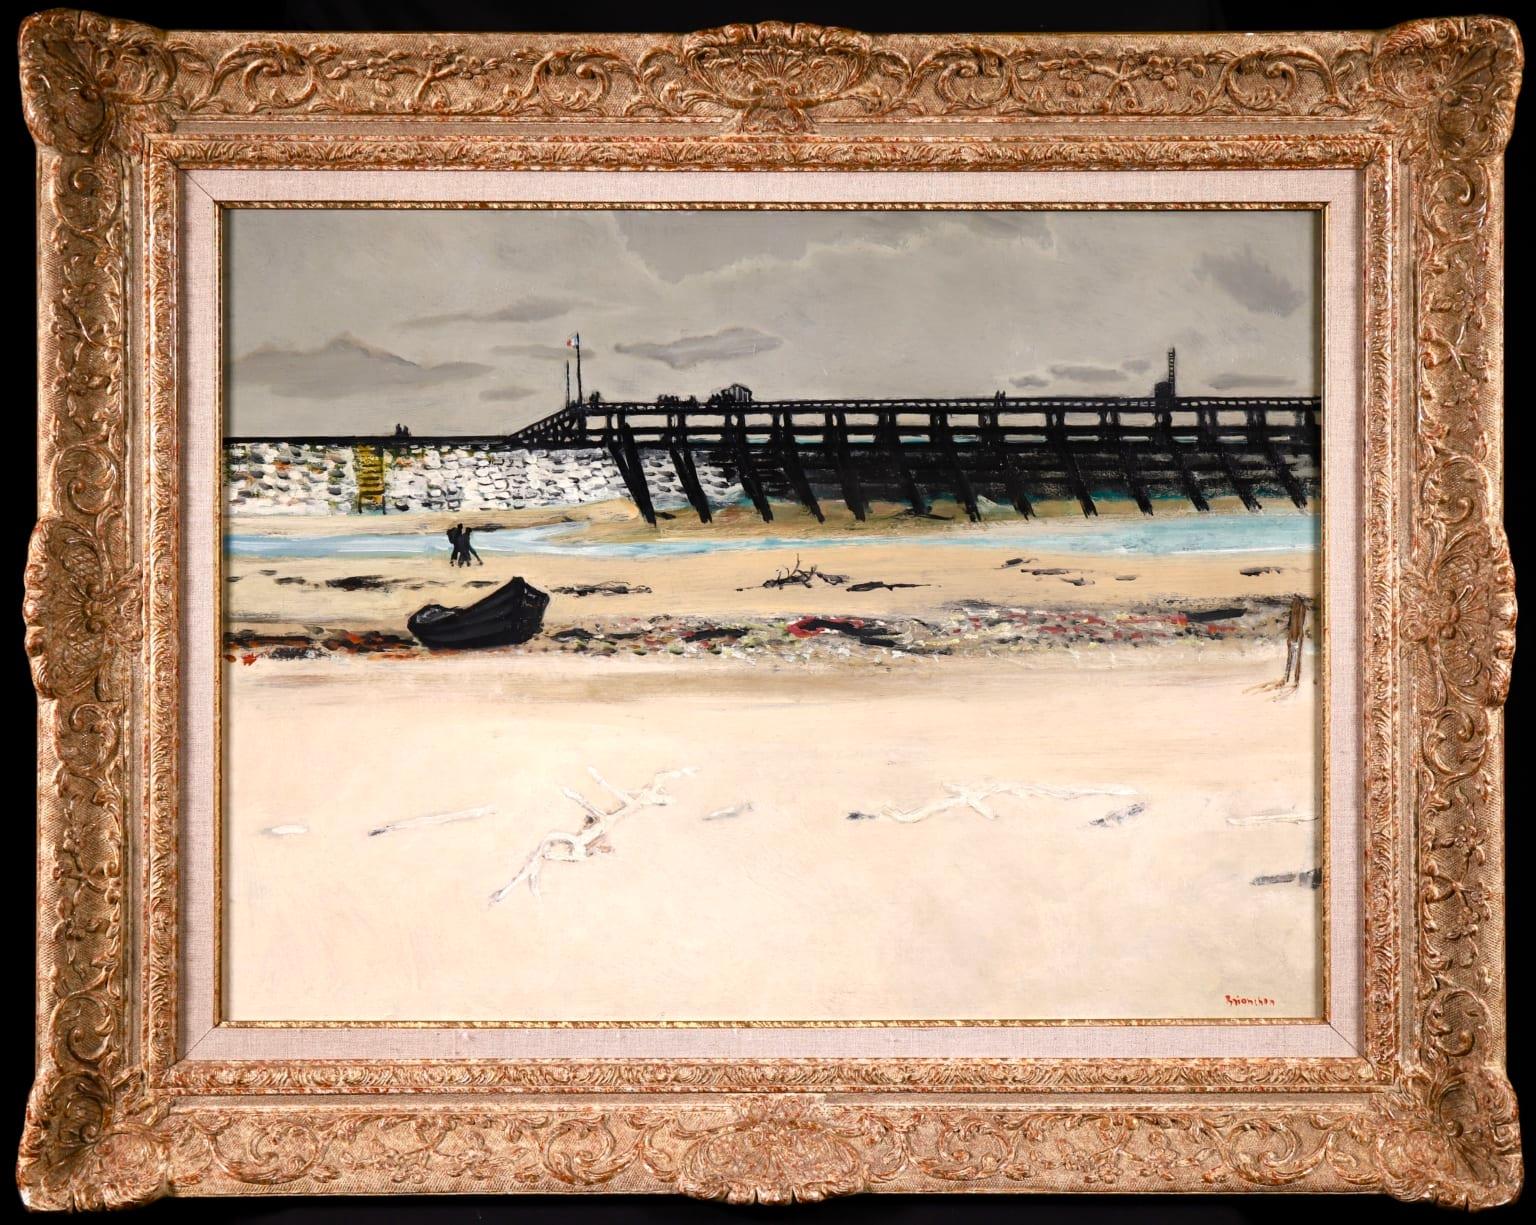 Signierte Öl auf Leinwand Küstenlandschaft von Französisch modernen Maler Maurice Brianchon, der als einer der Maler der poetischen Realität bekannt war. Dieses schlichte und charmante Stück zeigt einen Blick auf den Strand von Soorts-Hossegor an